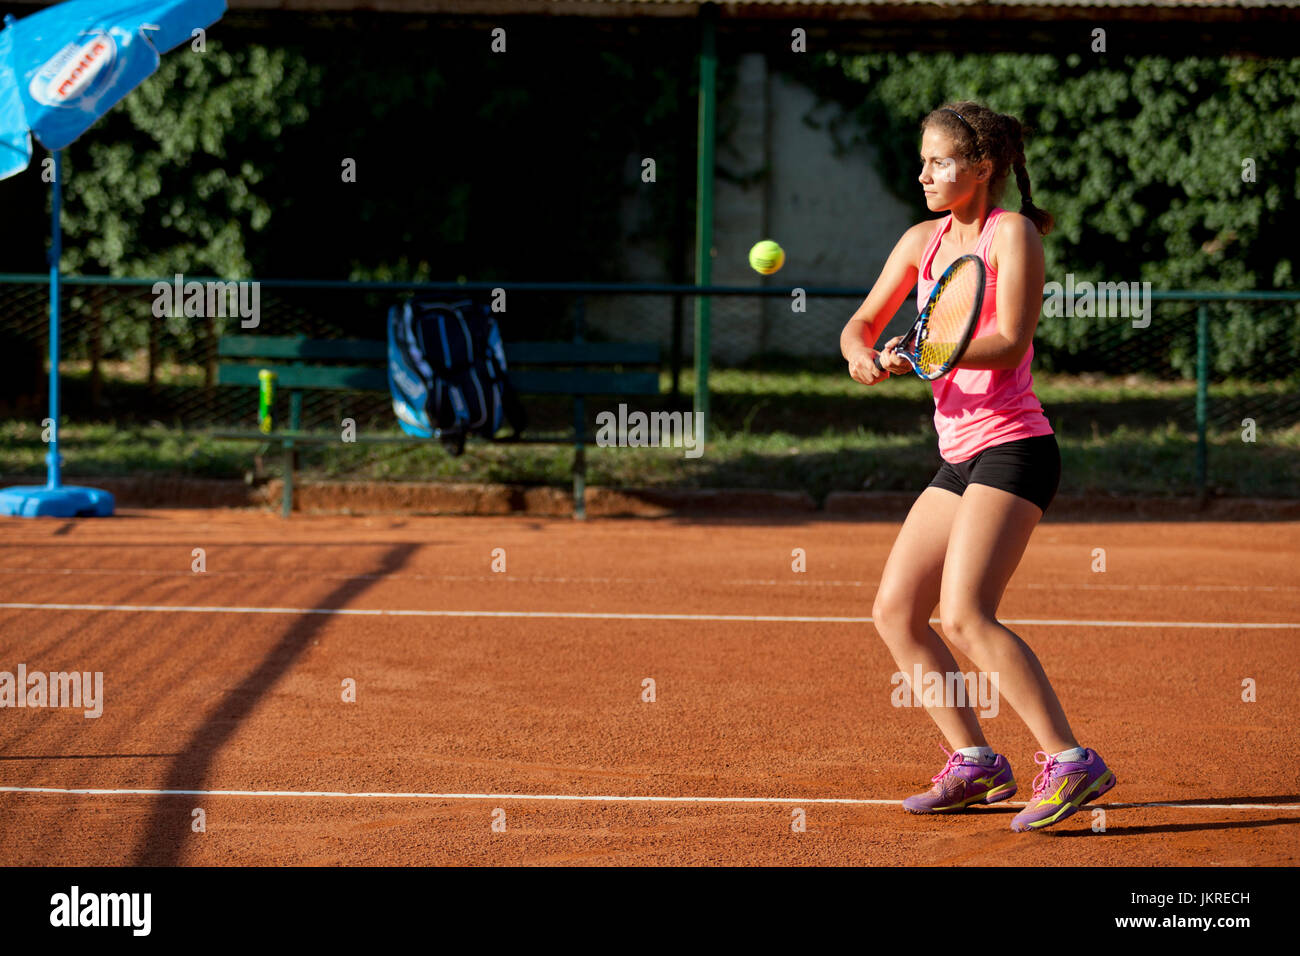 Jeune fille jouant au tennis sur terre battue rouge Banque D'Images